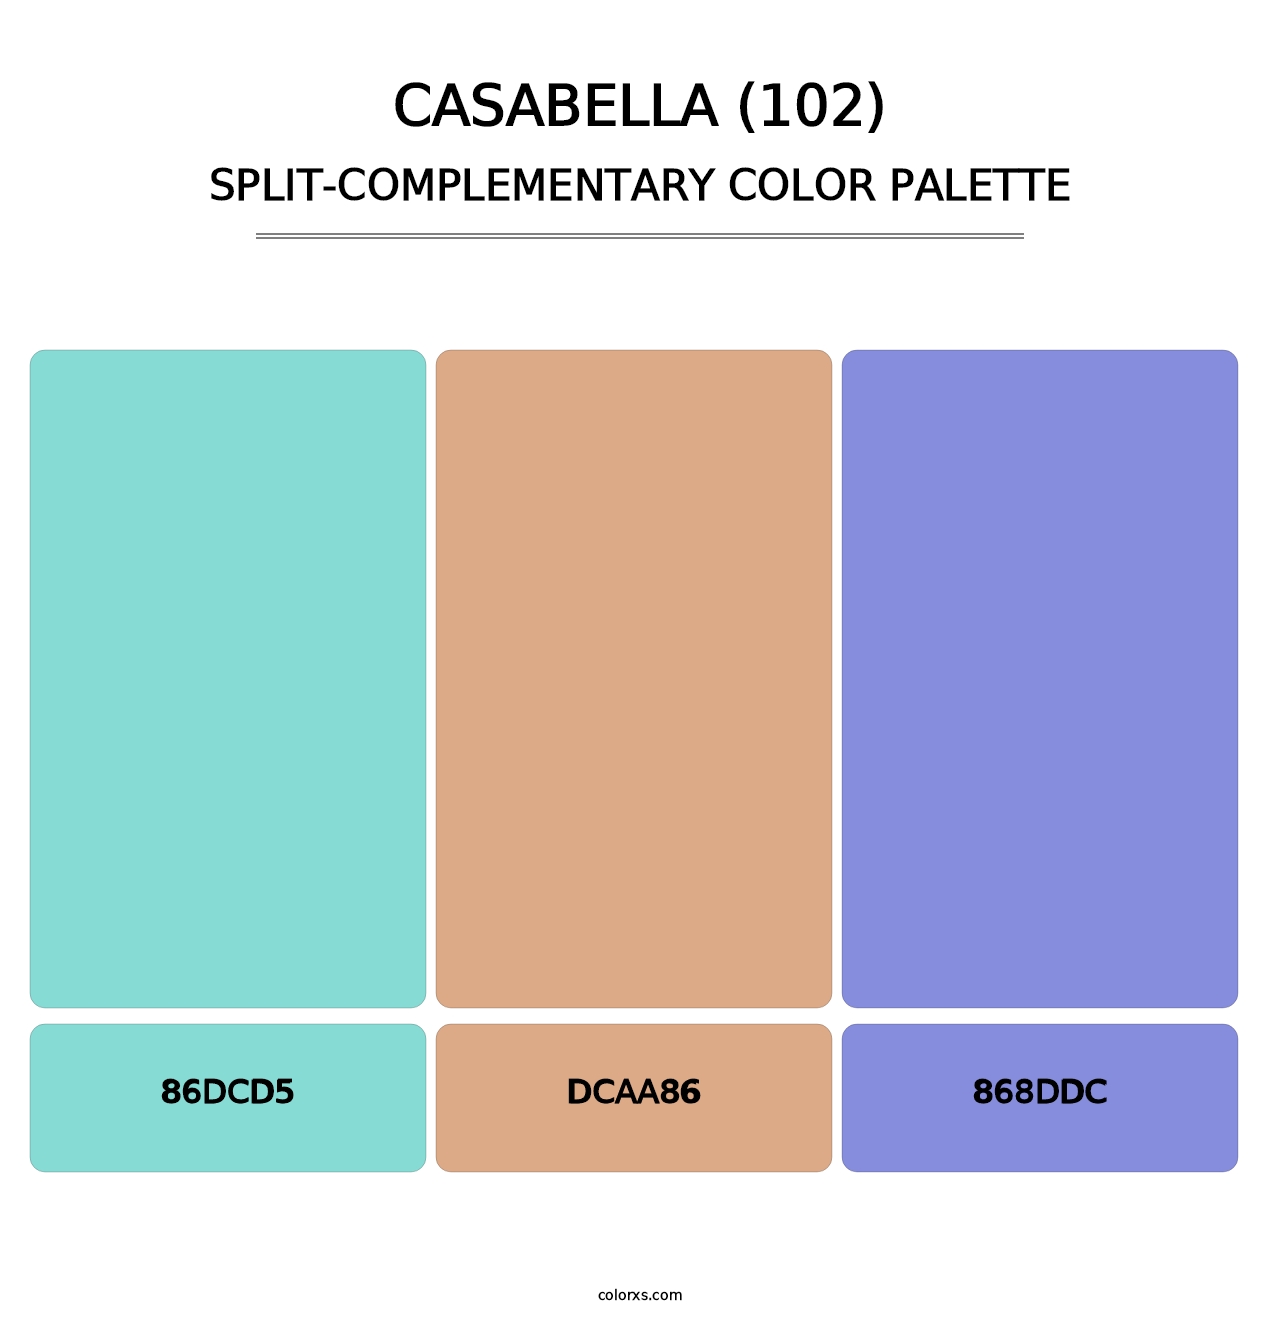 Casabella (102) - Split-Complementary Color Palette